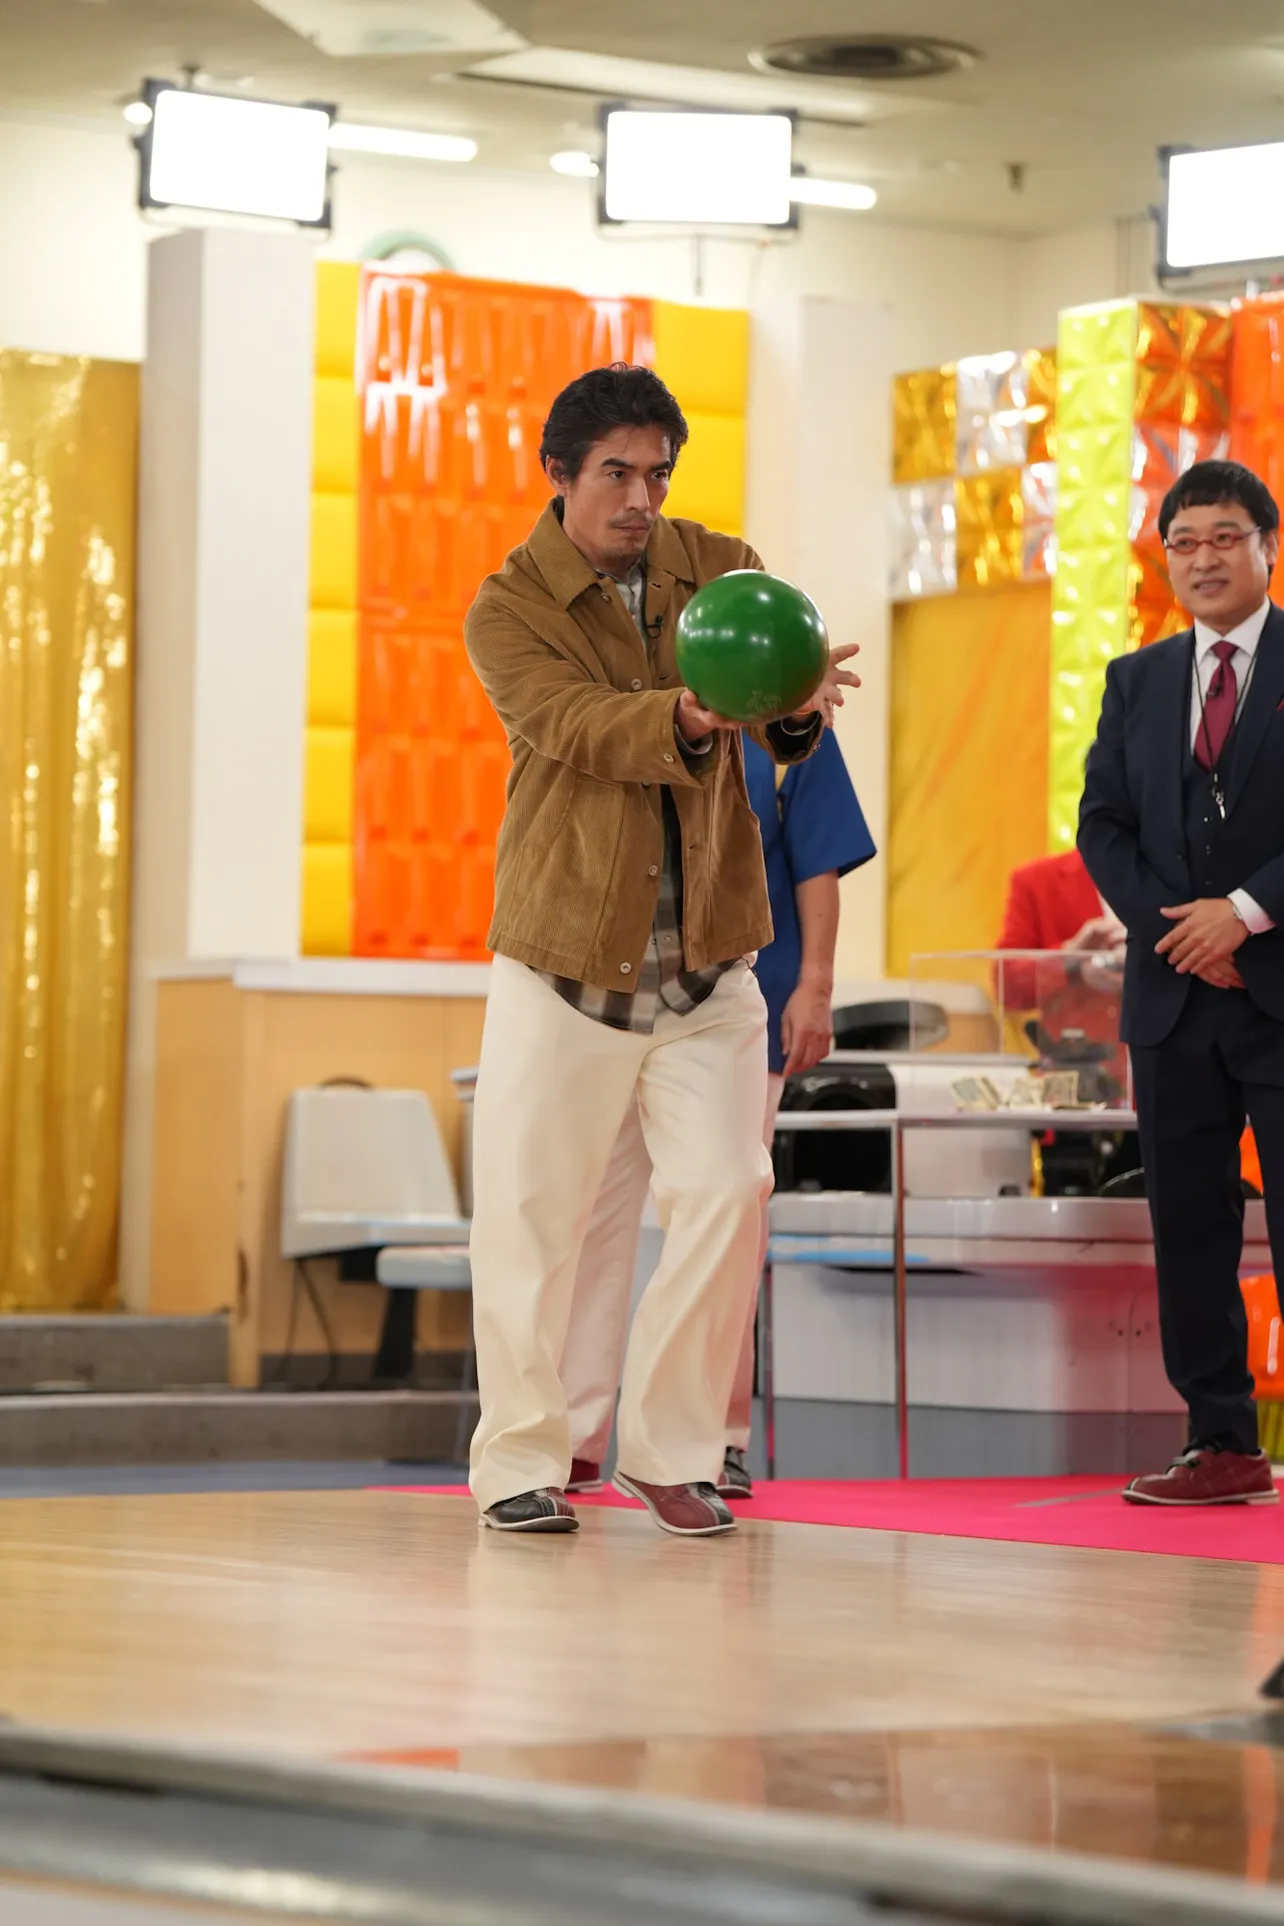 【写真】「元祖英語禁止ボウリング」の開幕を告げる始球式に、俳優の伊藤英明がまさかの登場